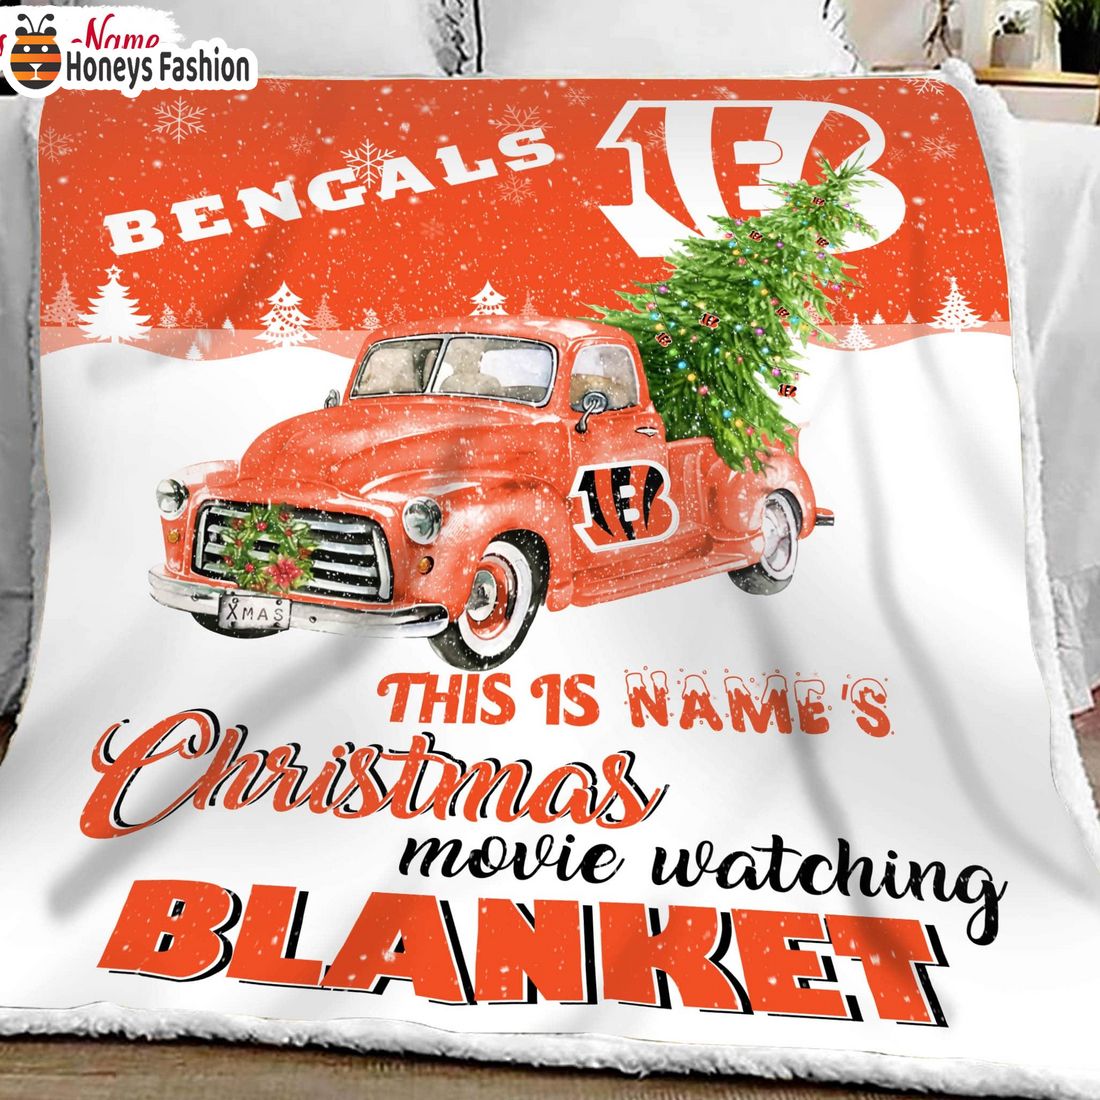 NFL Cincinnati Bengals Custom Name Christmas movie watching quilt blanket